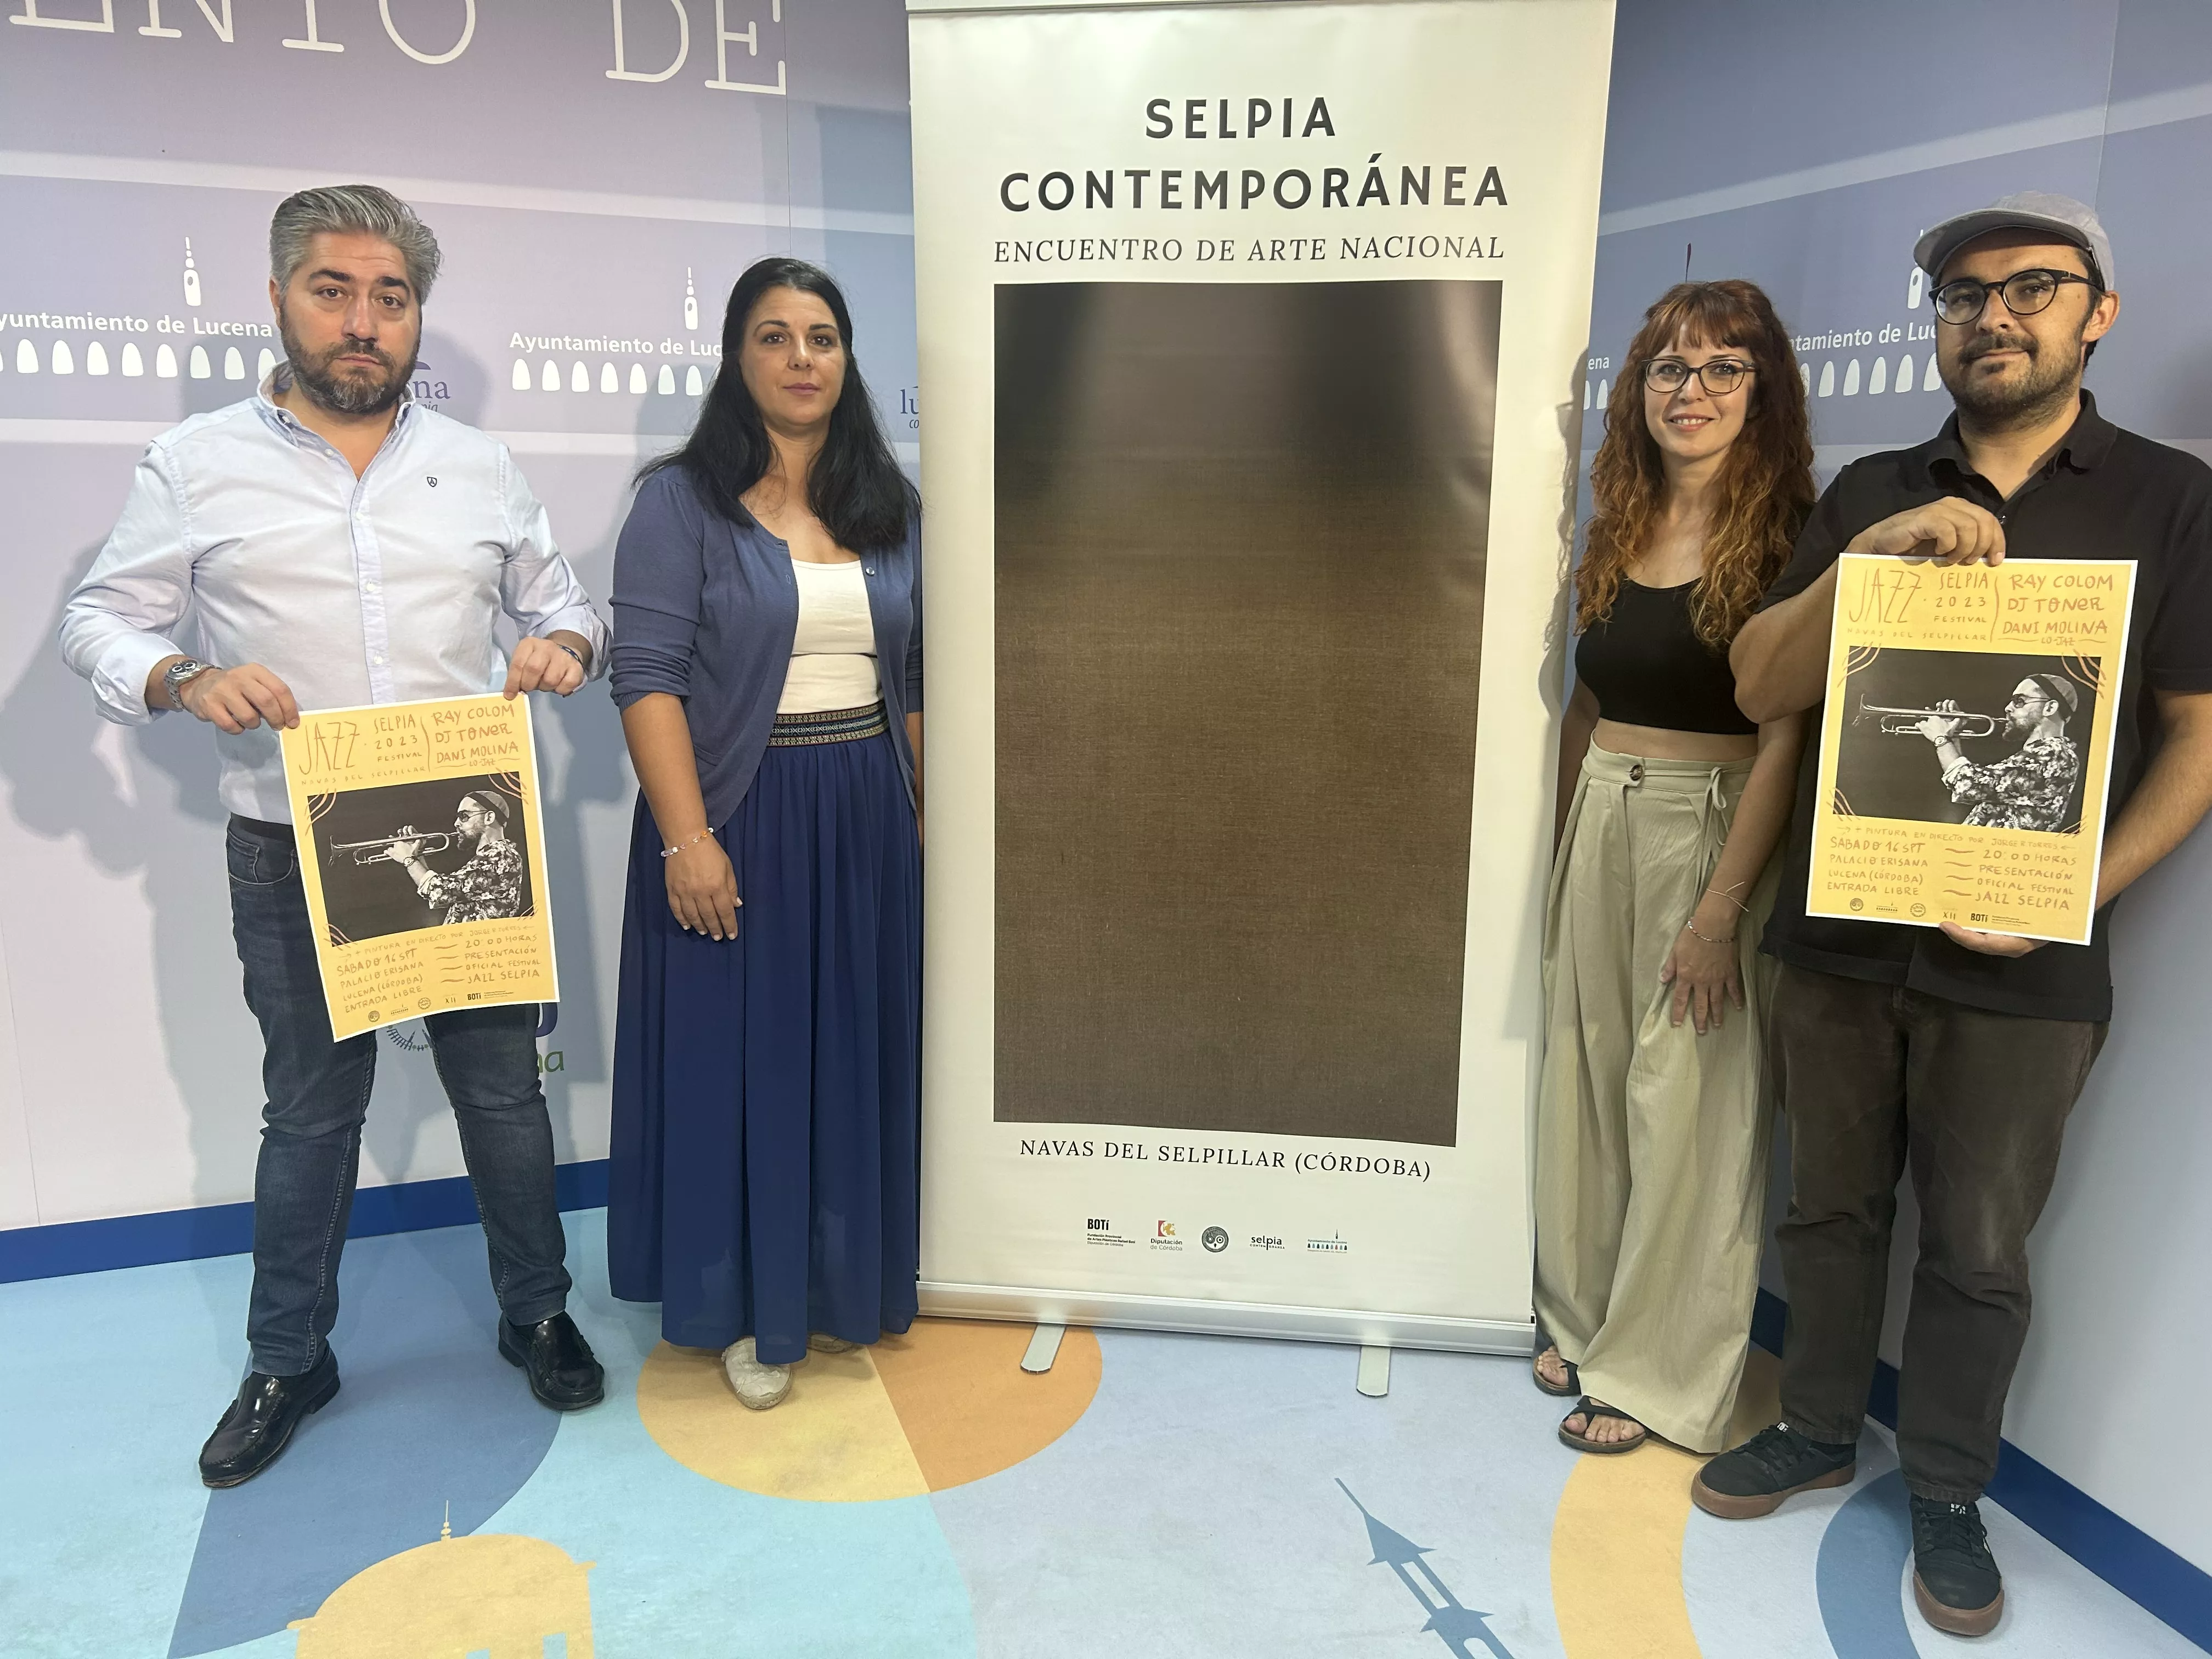 Presentación del Jazz Selpia Festival y Selpia Contemporánea, esta mañana en el Ayuntamiento de Lucena